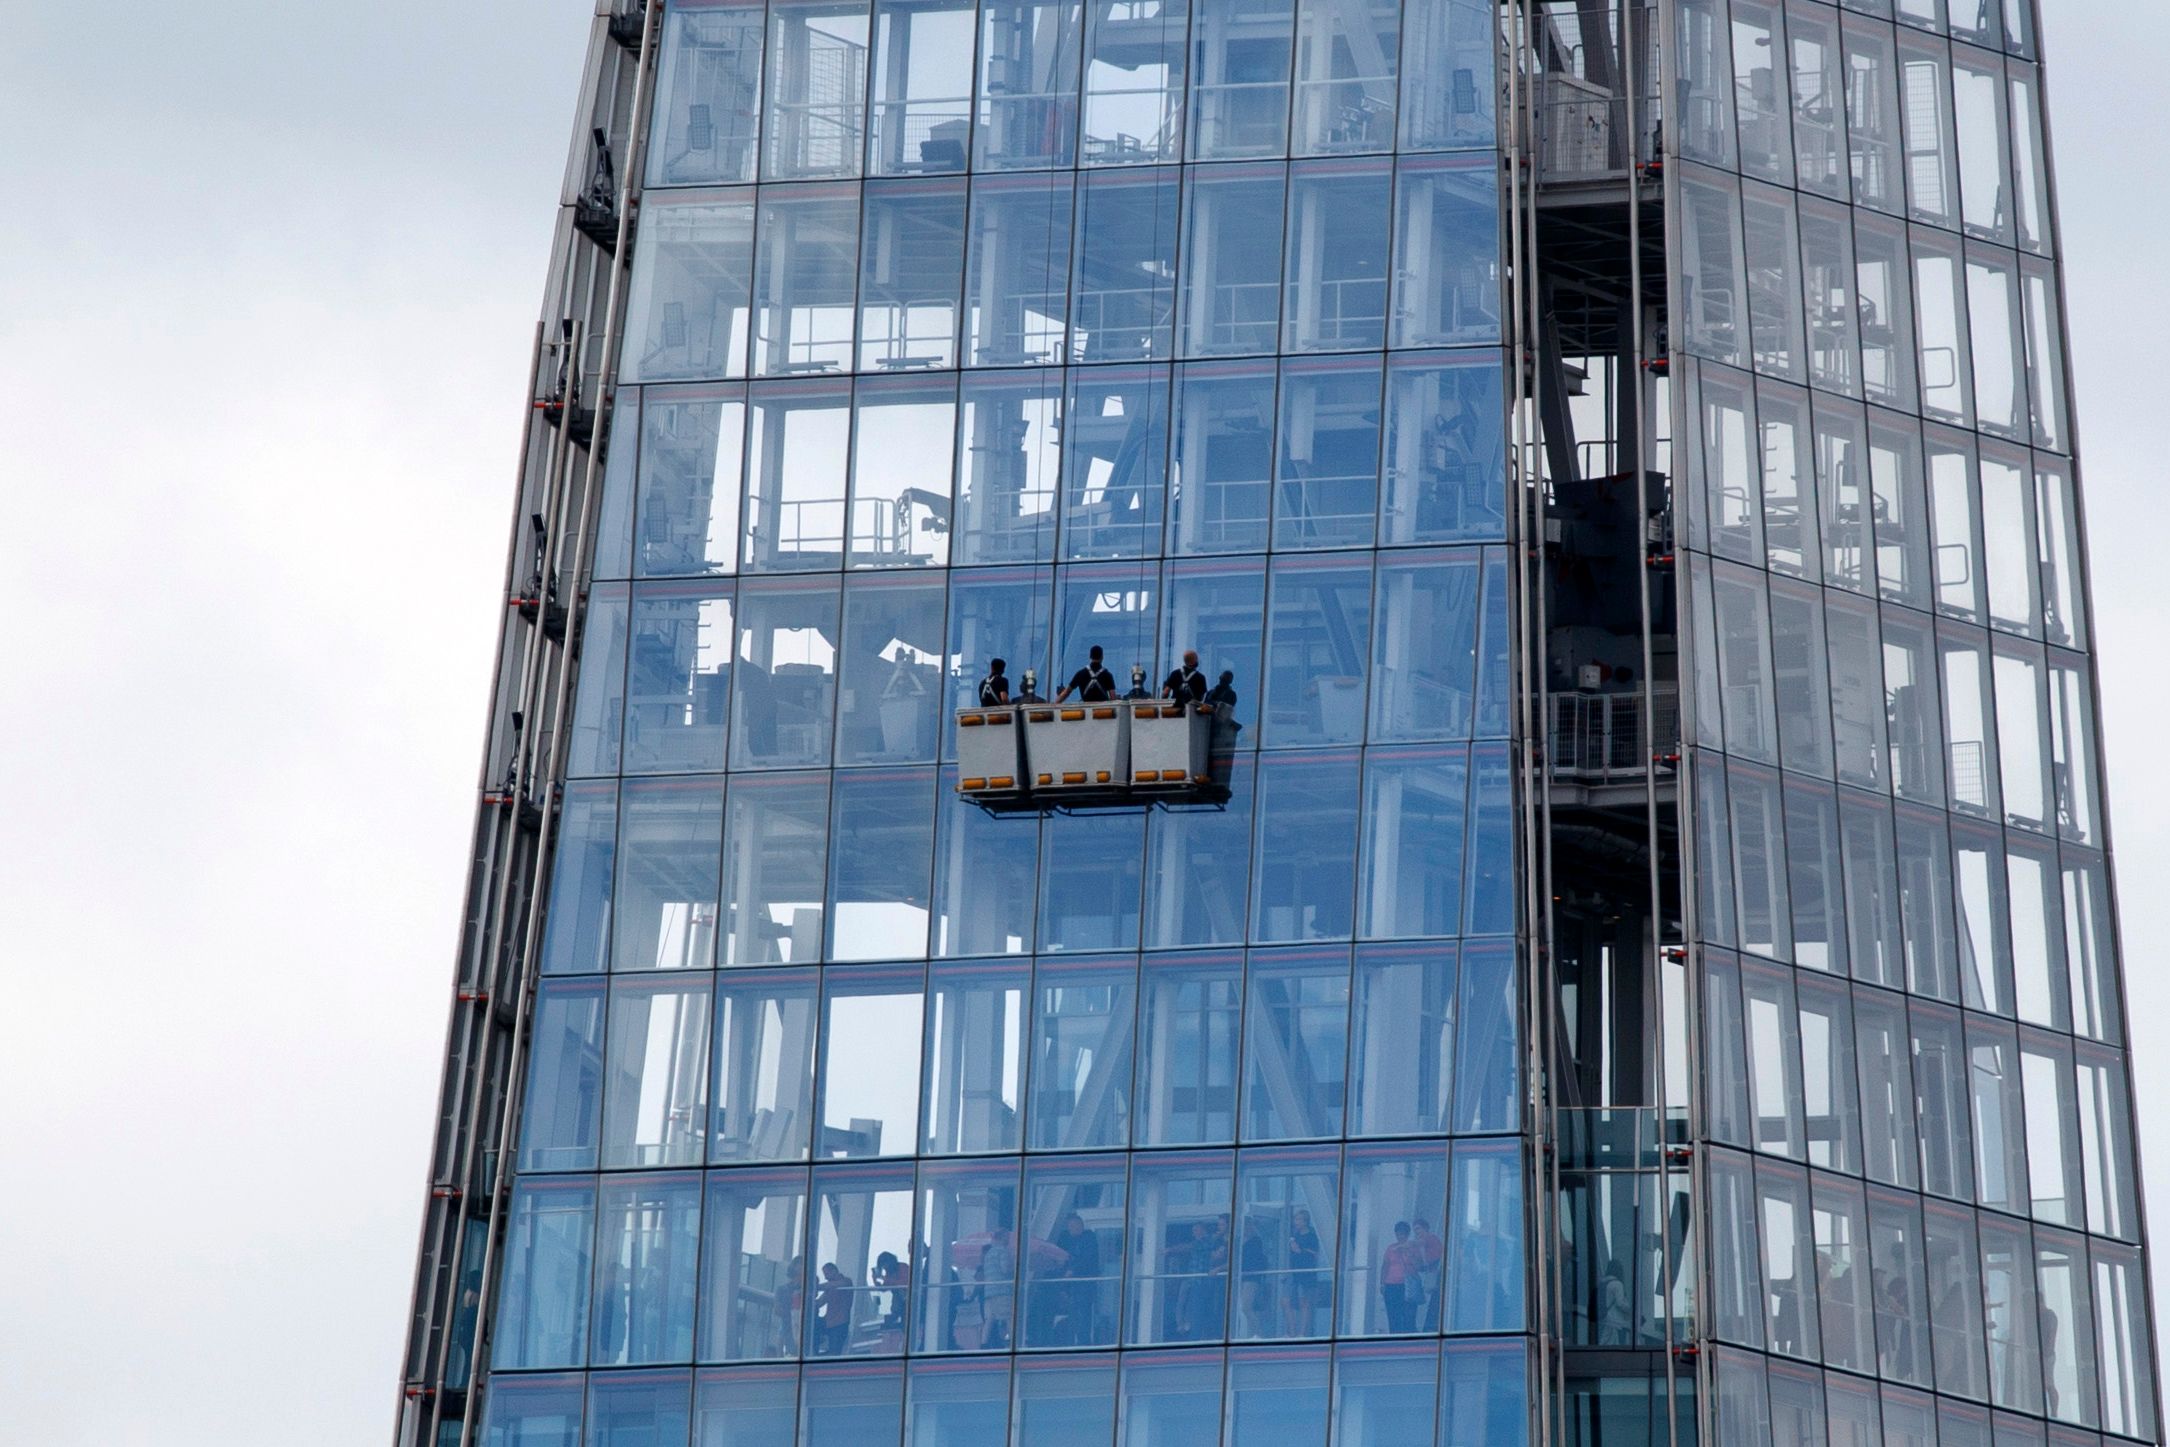 Varias personas limpian las ventanas  del rascacielos The Shard, el más grande de Europa. (Foto Prensa Libre: AFP)